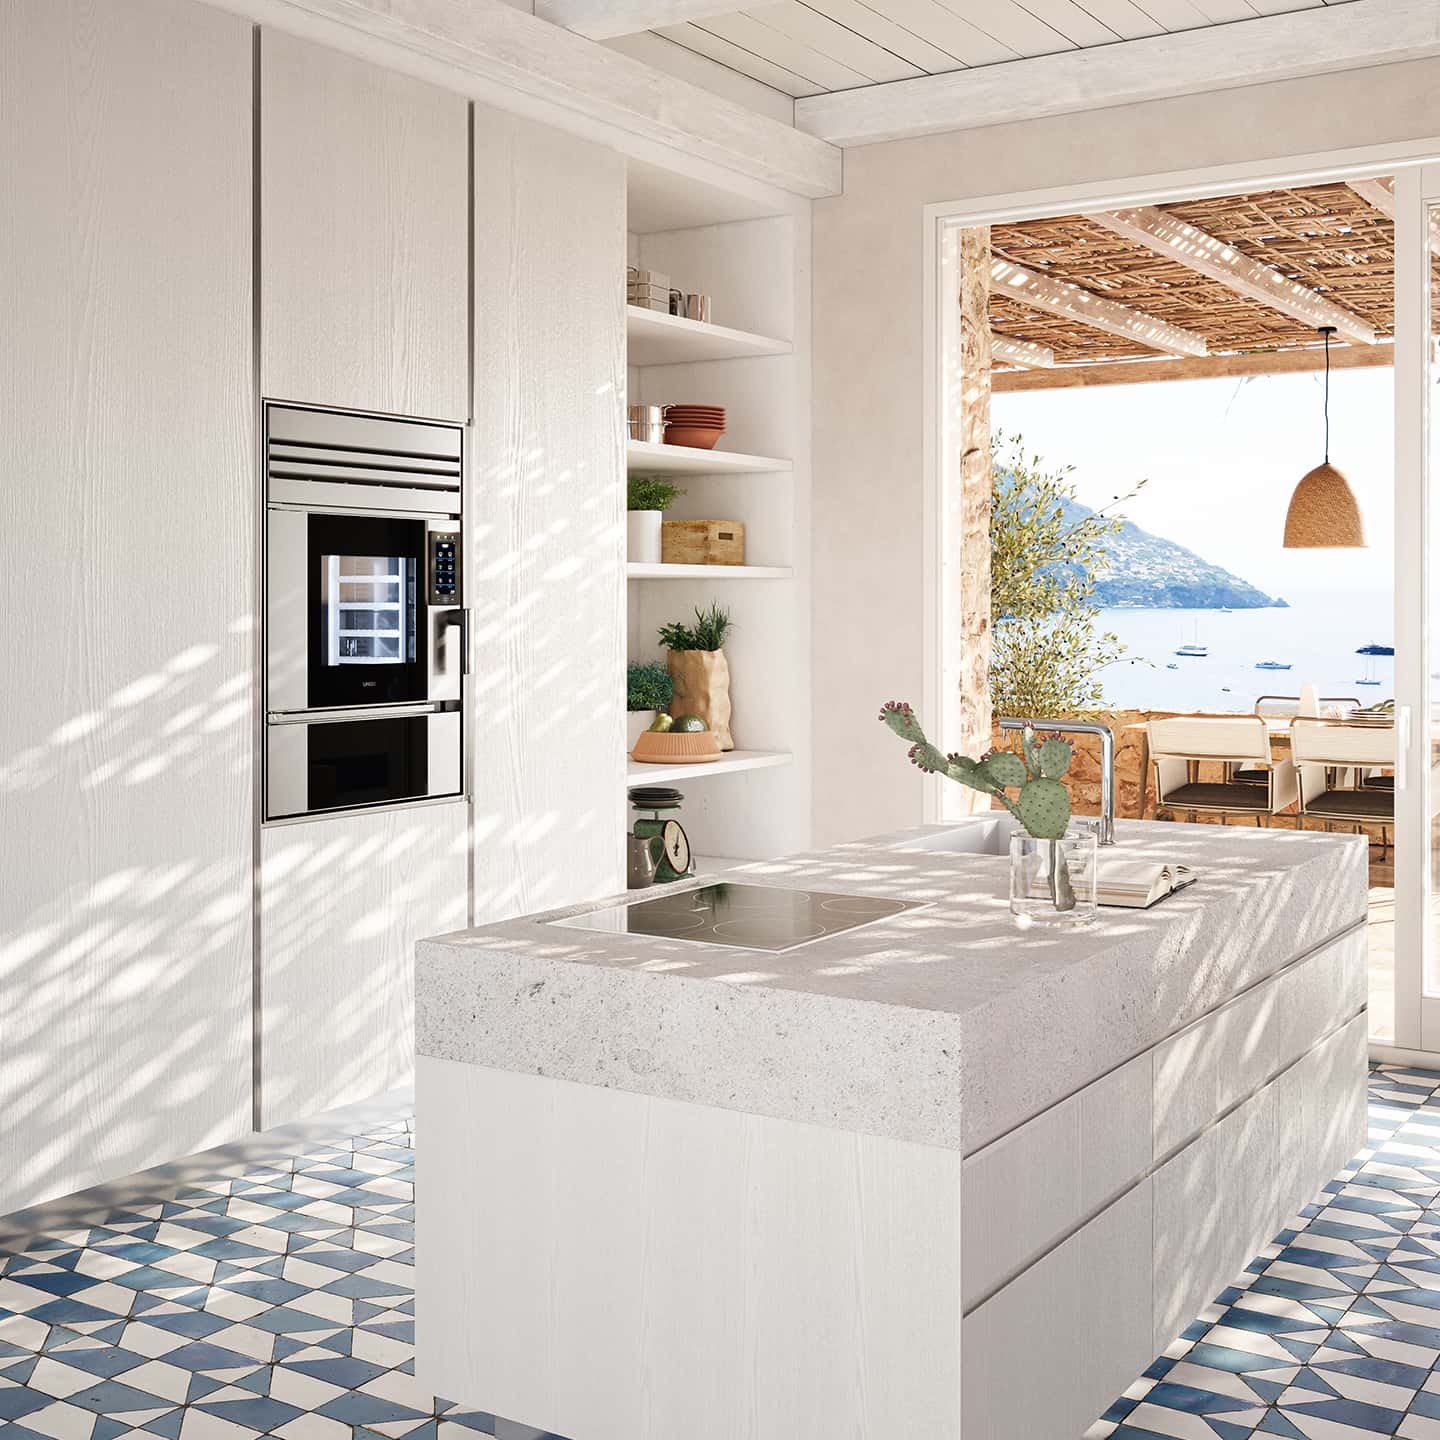  Cuisine de luxe à Taormina mise en valeur par le design iconique 100% Made in Italy d'Unox Casa 